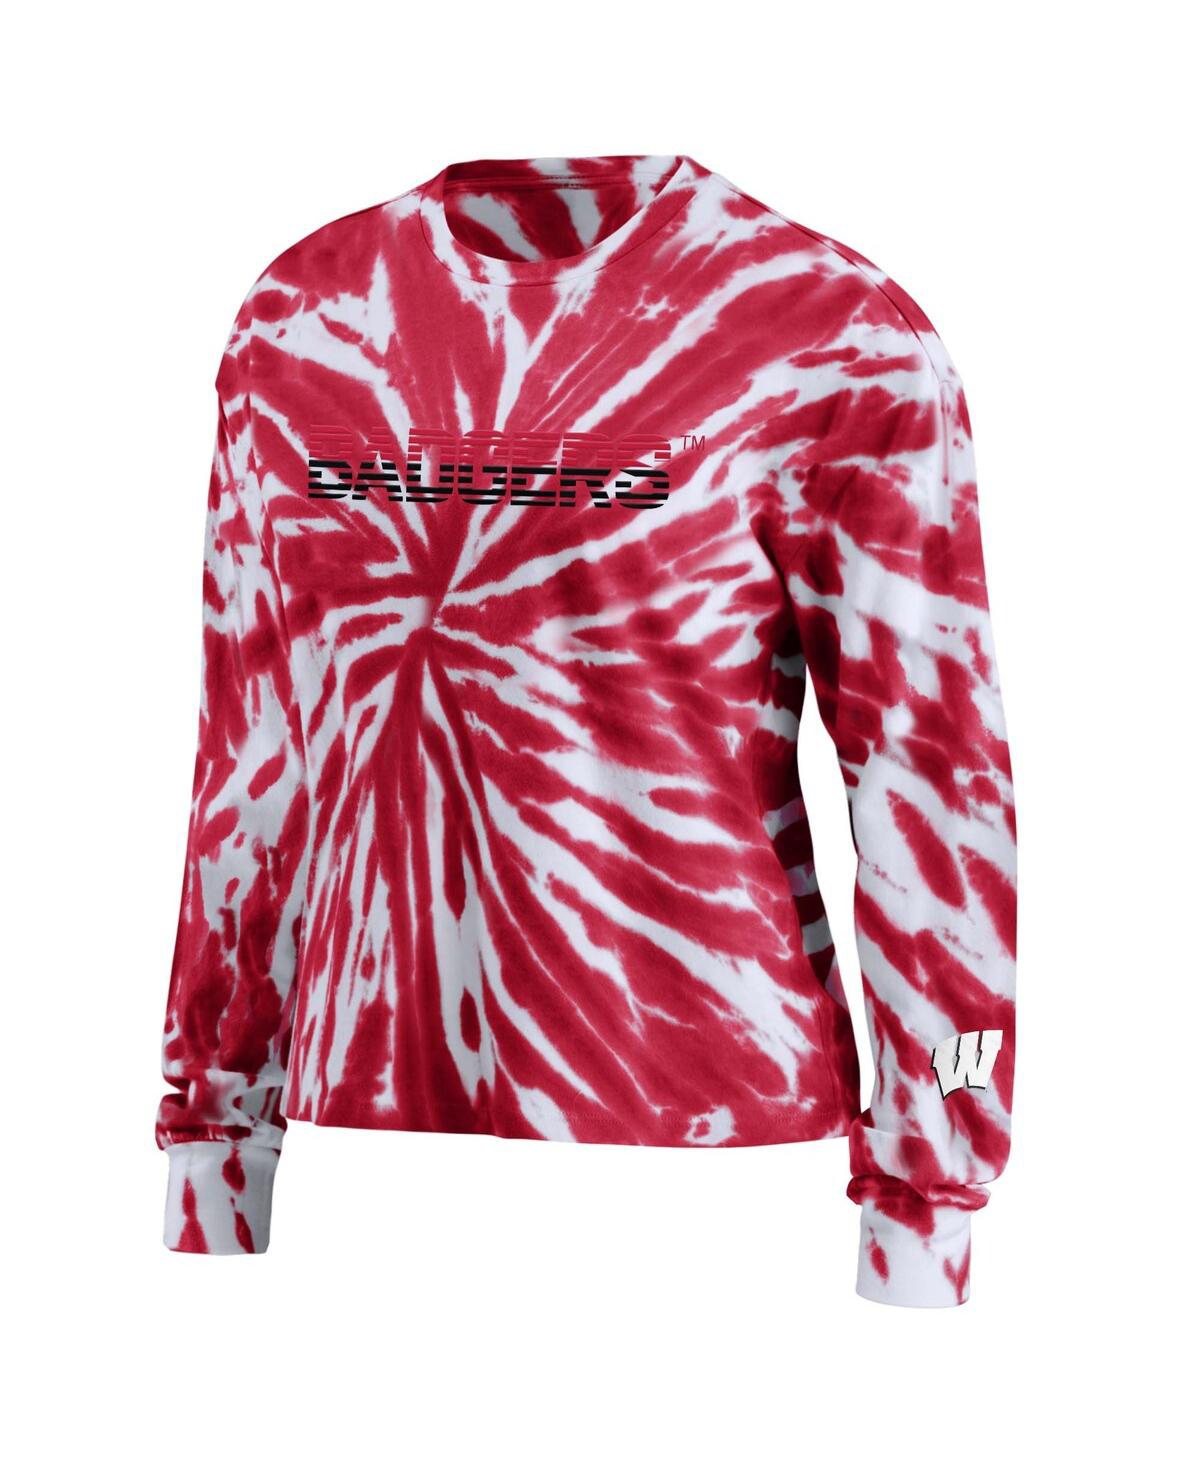 Shop Wear By Erin Andrews Women's  Red Wisconsin Badgers Tie-dye Long Sleeve T-shirt